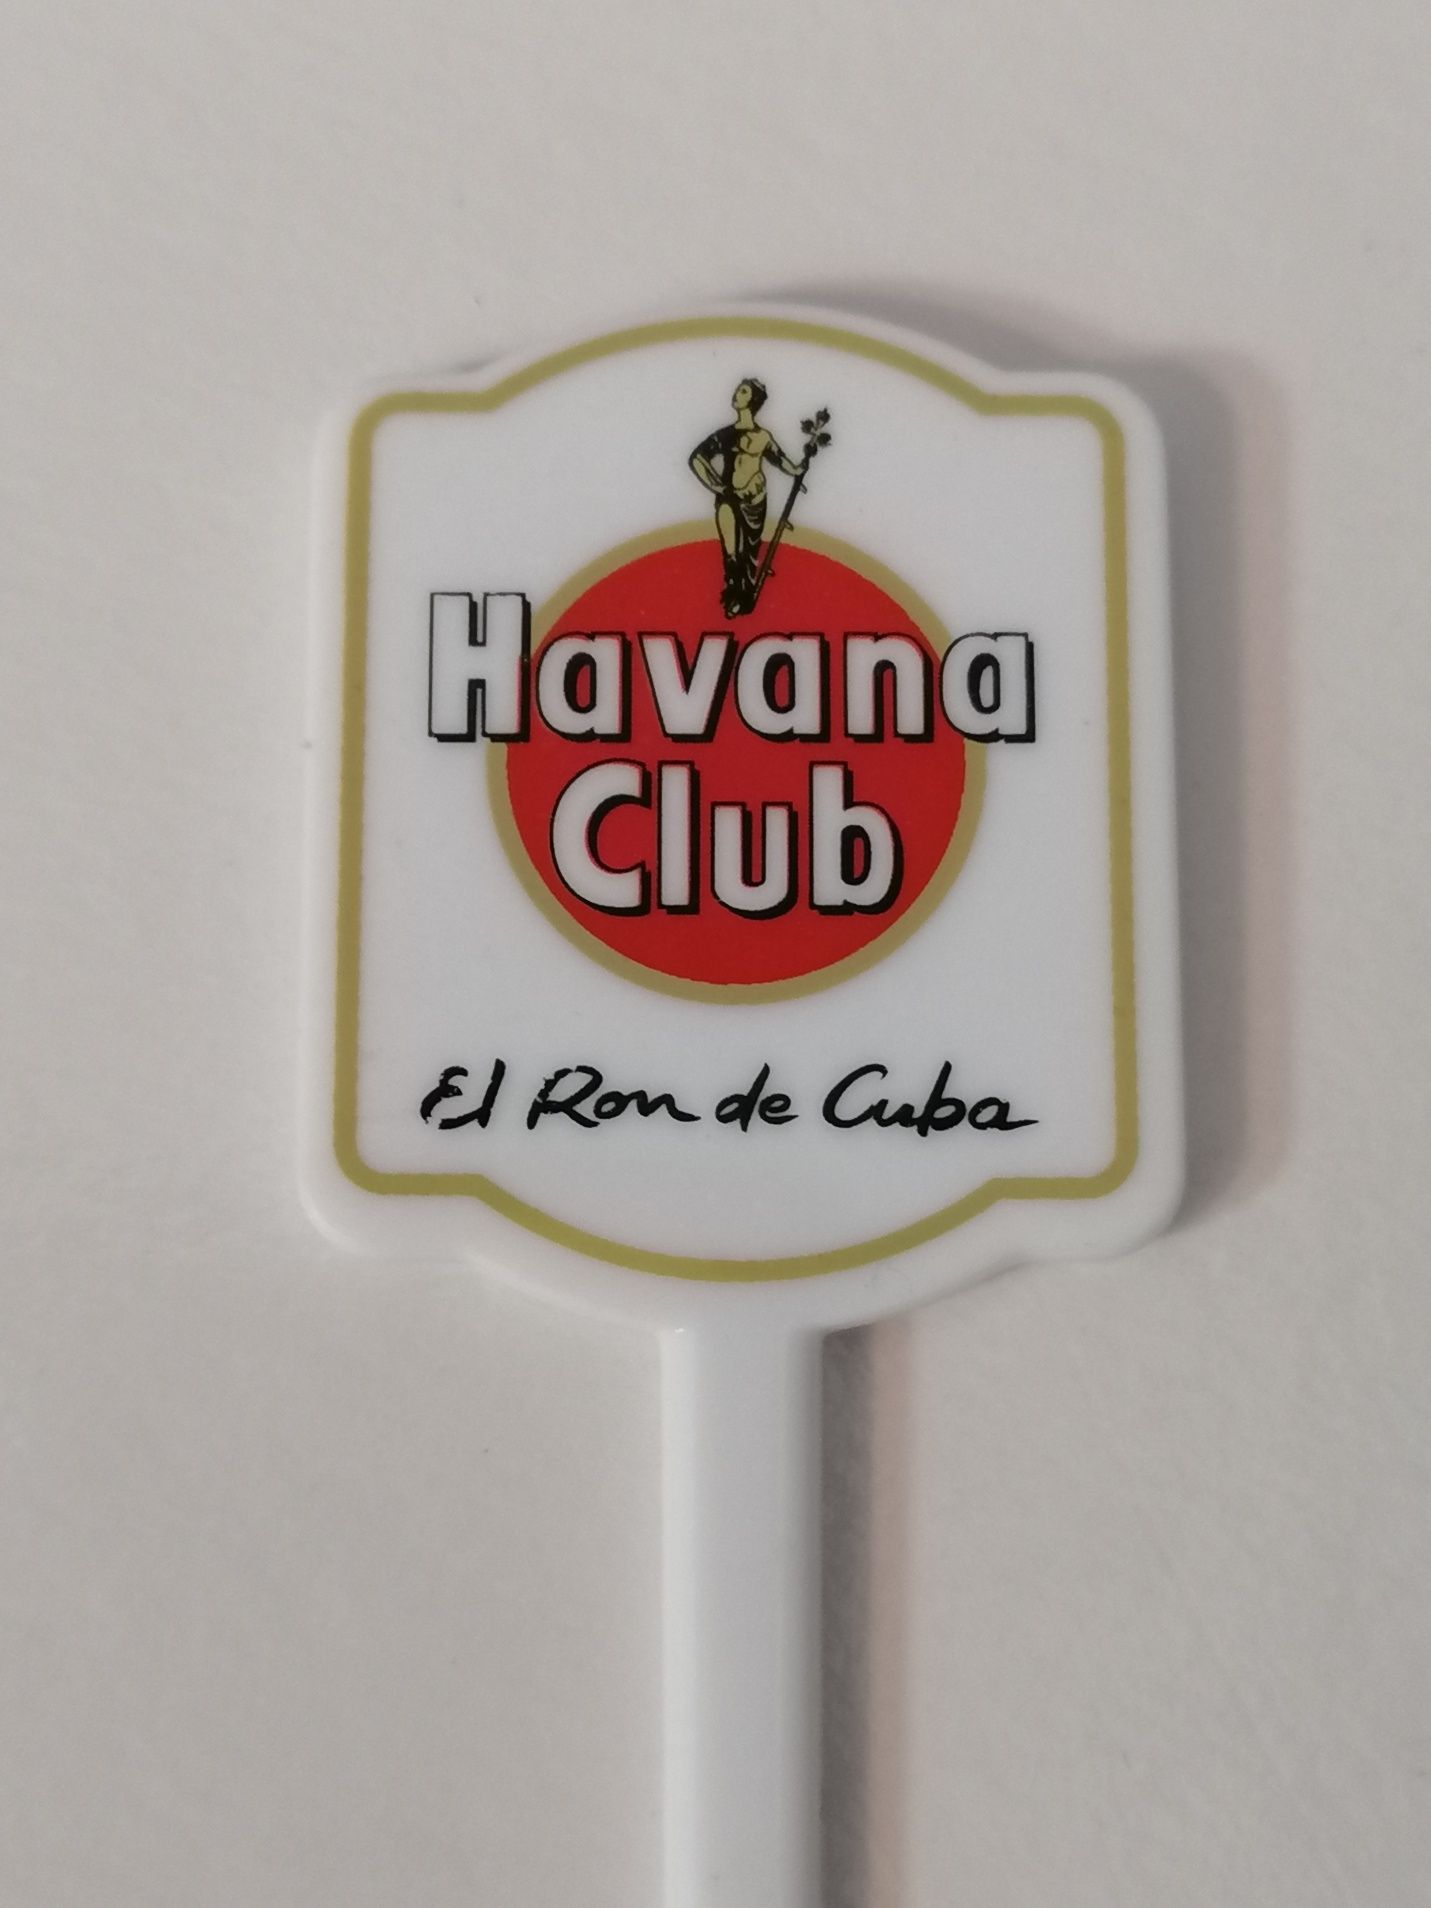 Sticker publicidade bebidas, Havana rum, Sheraton e Bejaparque hotel